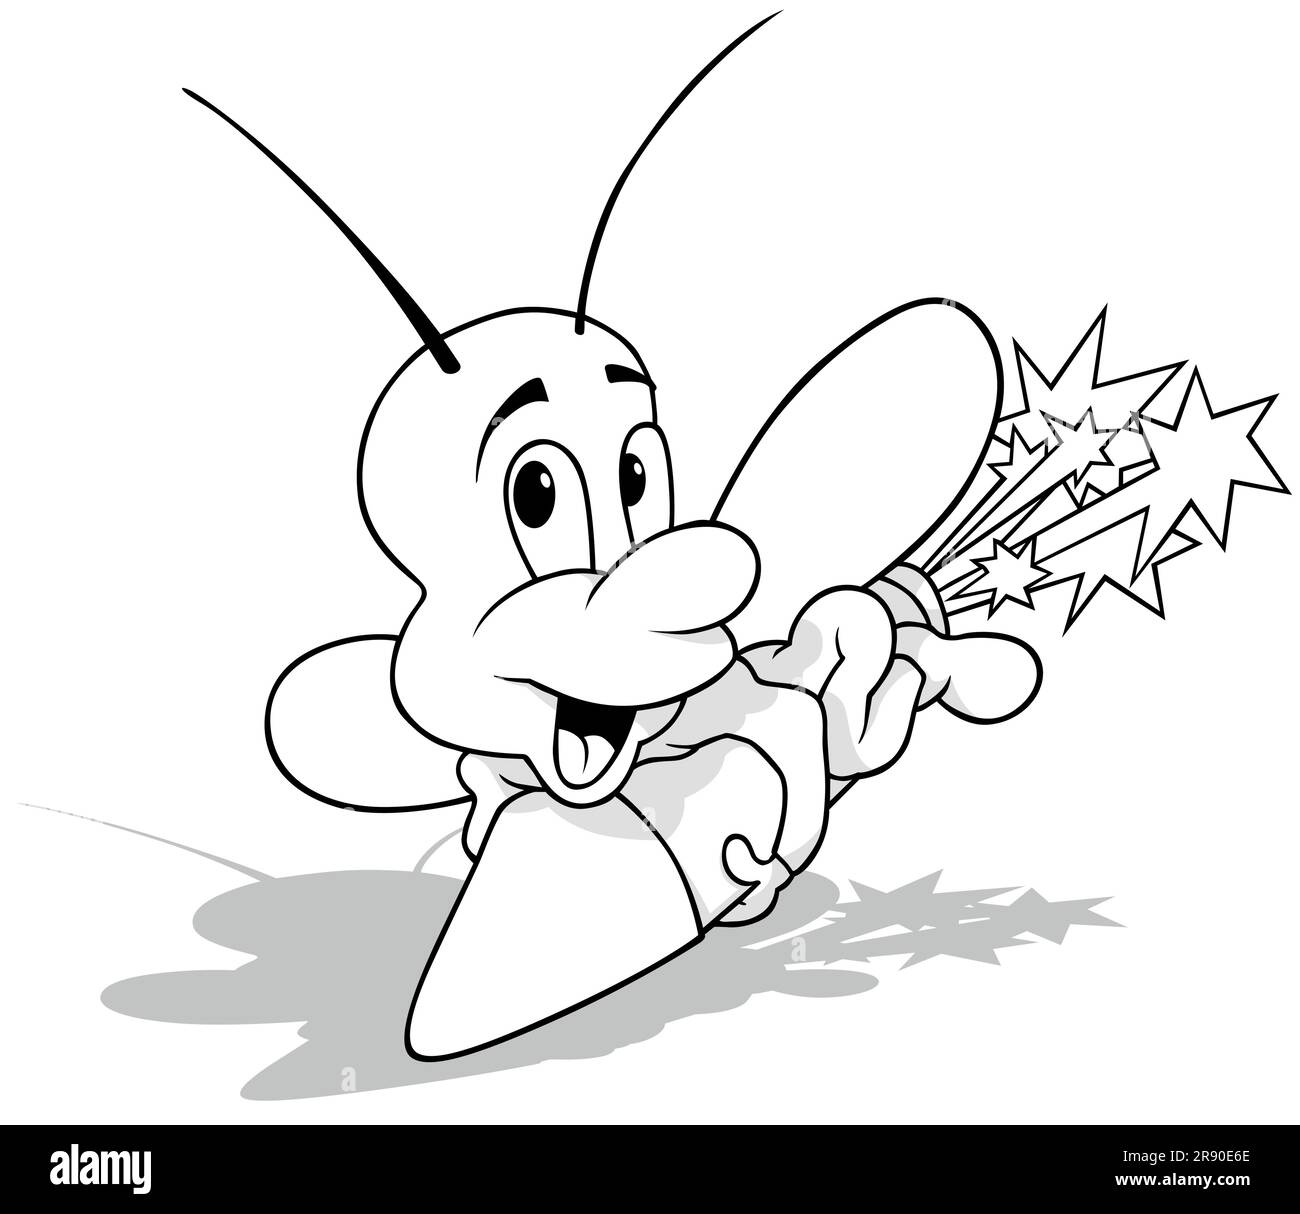 Zeichnung eines Käfers, der auf einer Feuerwerksrakete sitzt Stock Vektor